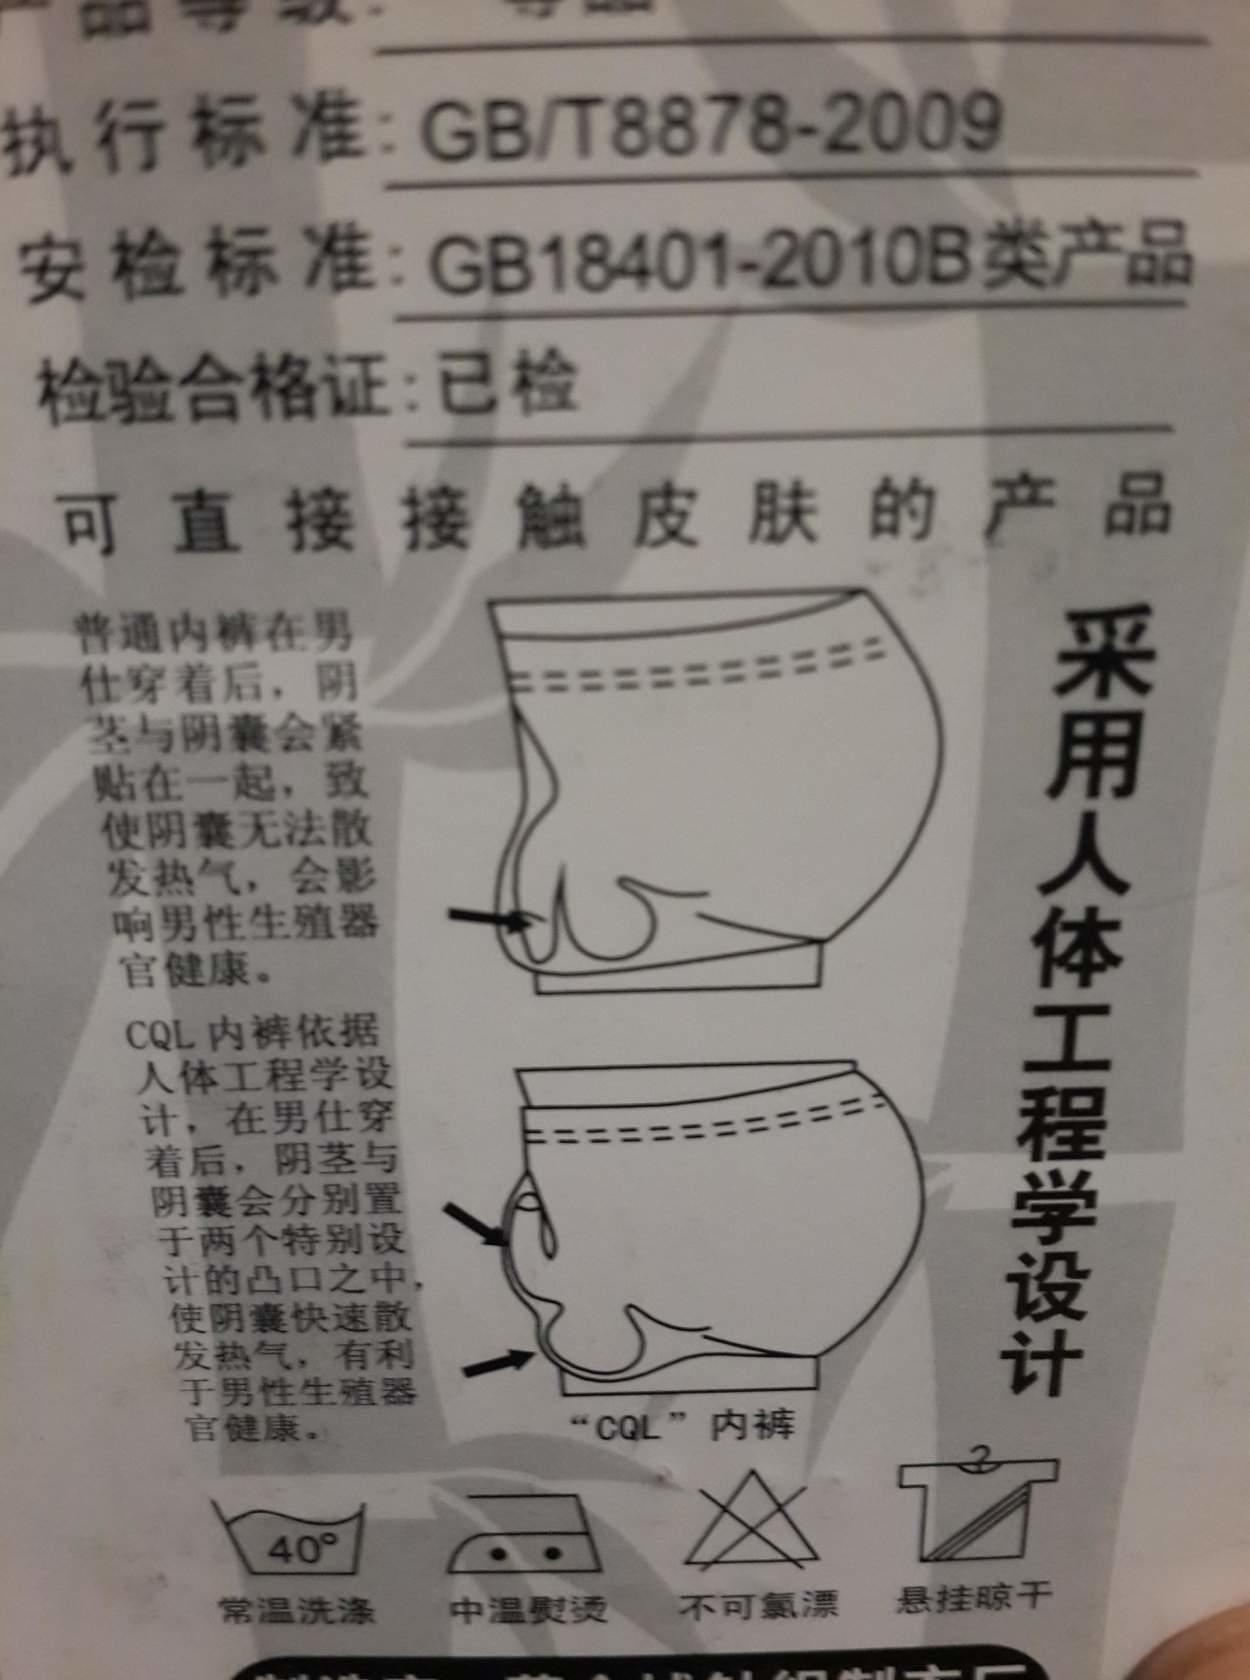 Ношенные трусы мальчиков. Инструкция на китайском. Как правильно носить трусы. Как правильно носить трусы мужские. Как правильно одевать трусы мужские.